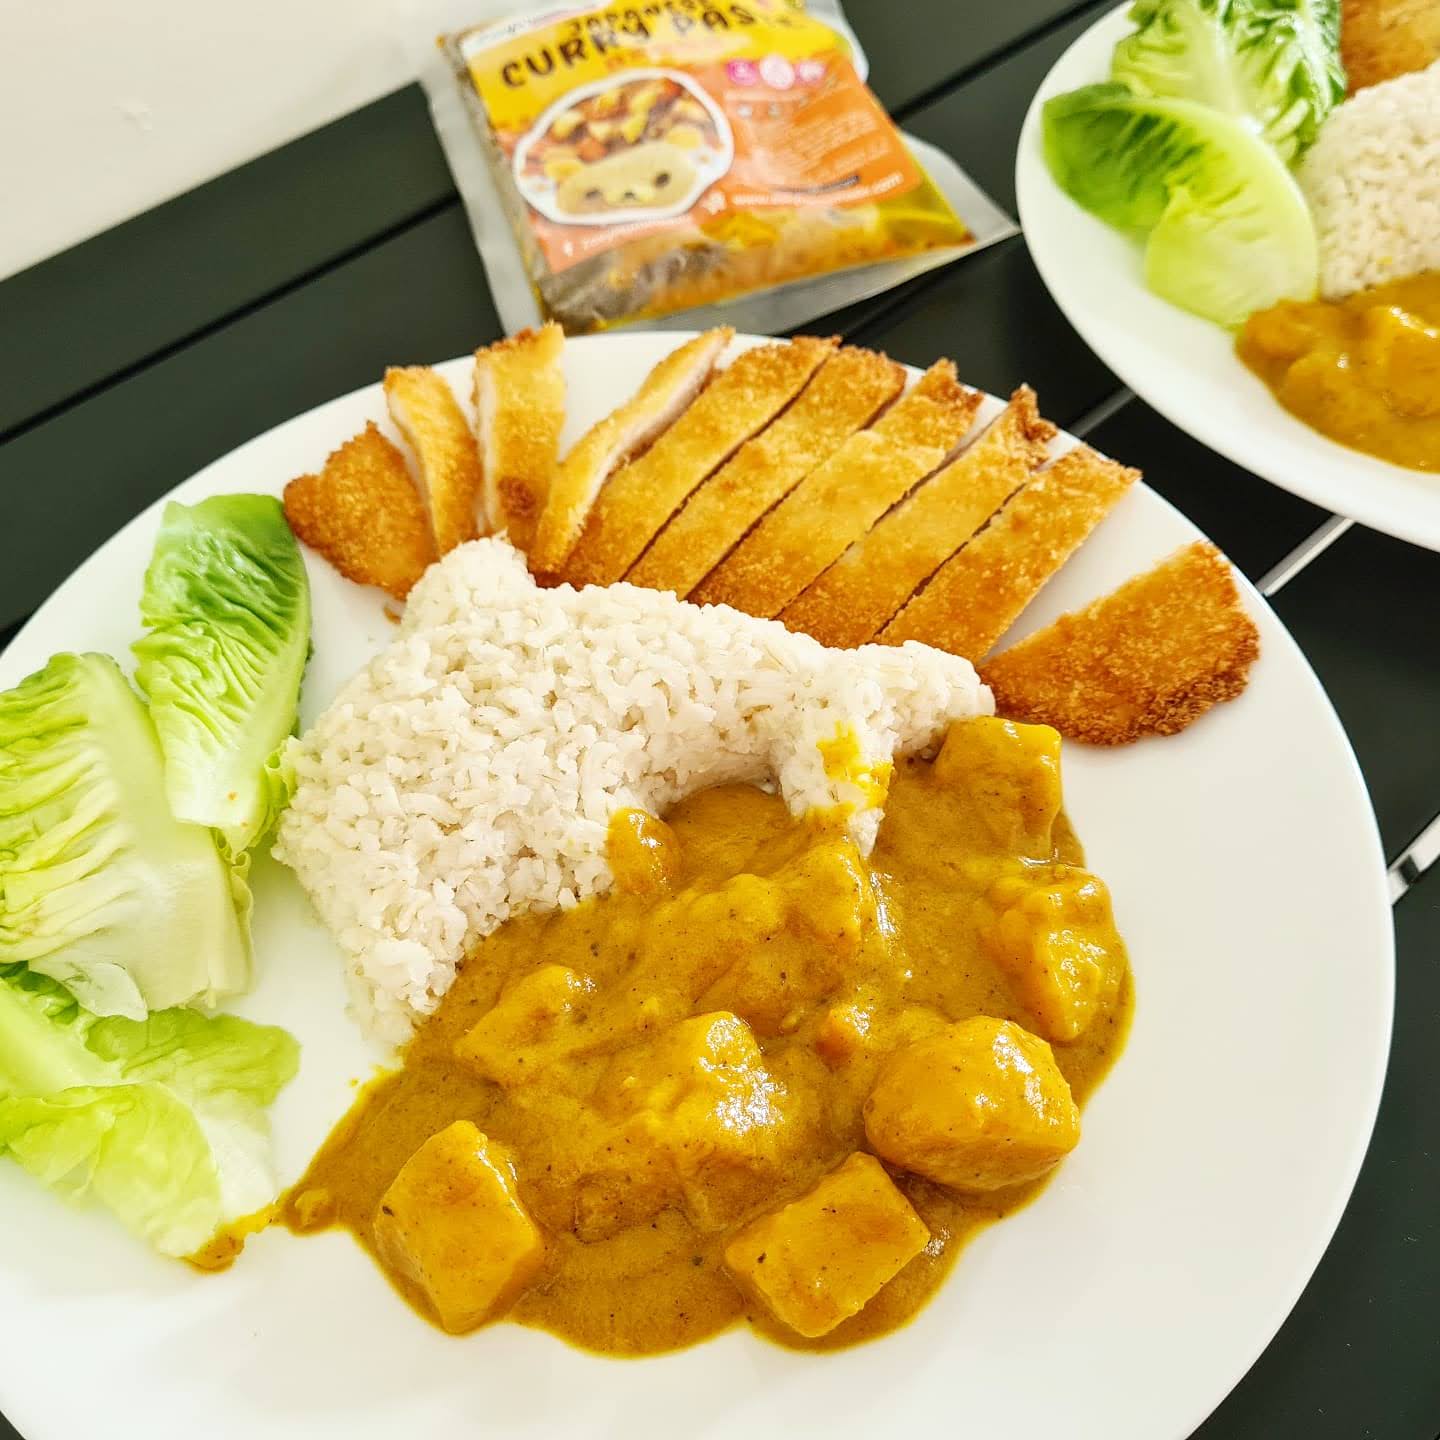 日式咖喱土豆鸡肉盖饭怎么做_日式咖喱土豆鸡肉盖饭的做法_Tina厨房日记_豆果美食